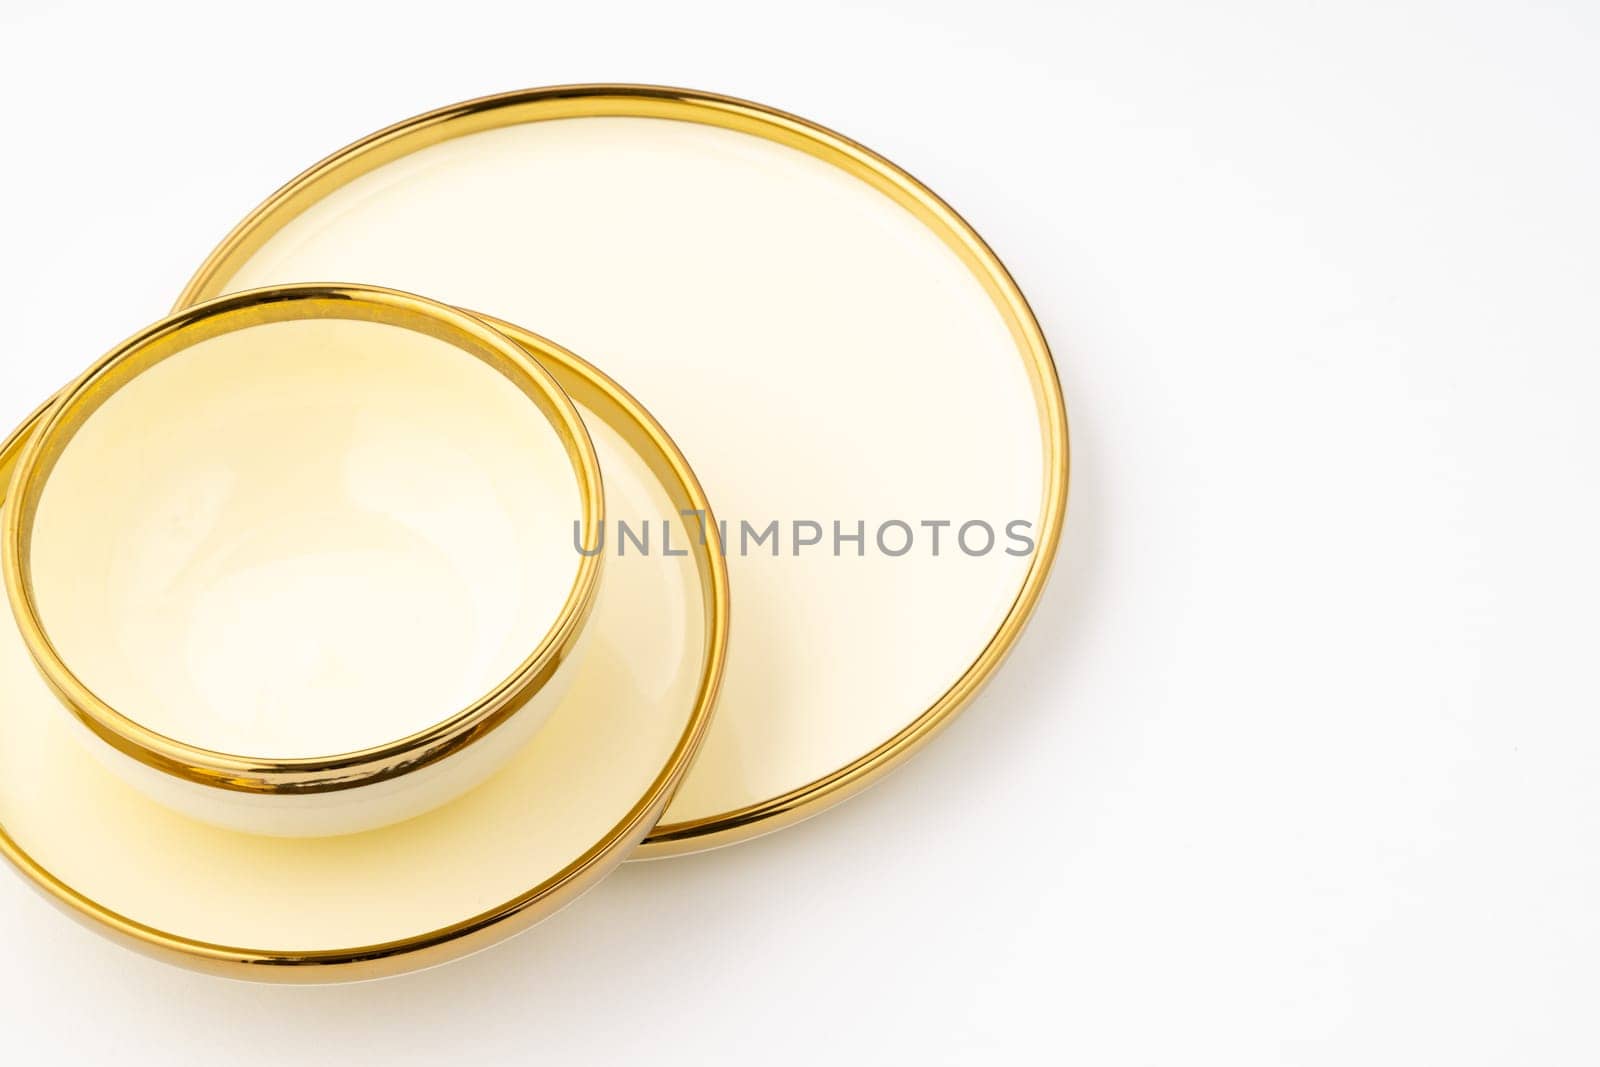 A golden luxury ceramic kitchen utensils on a white background by A_Karim